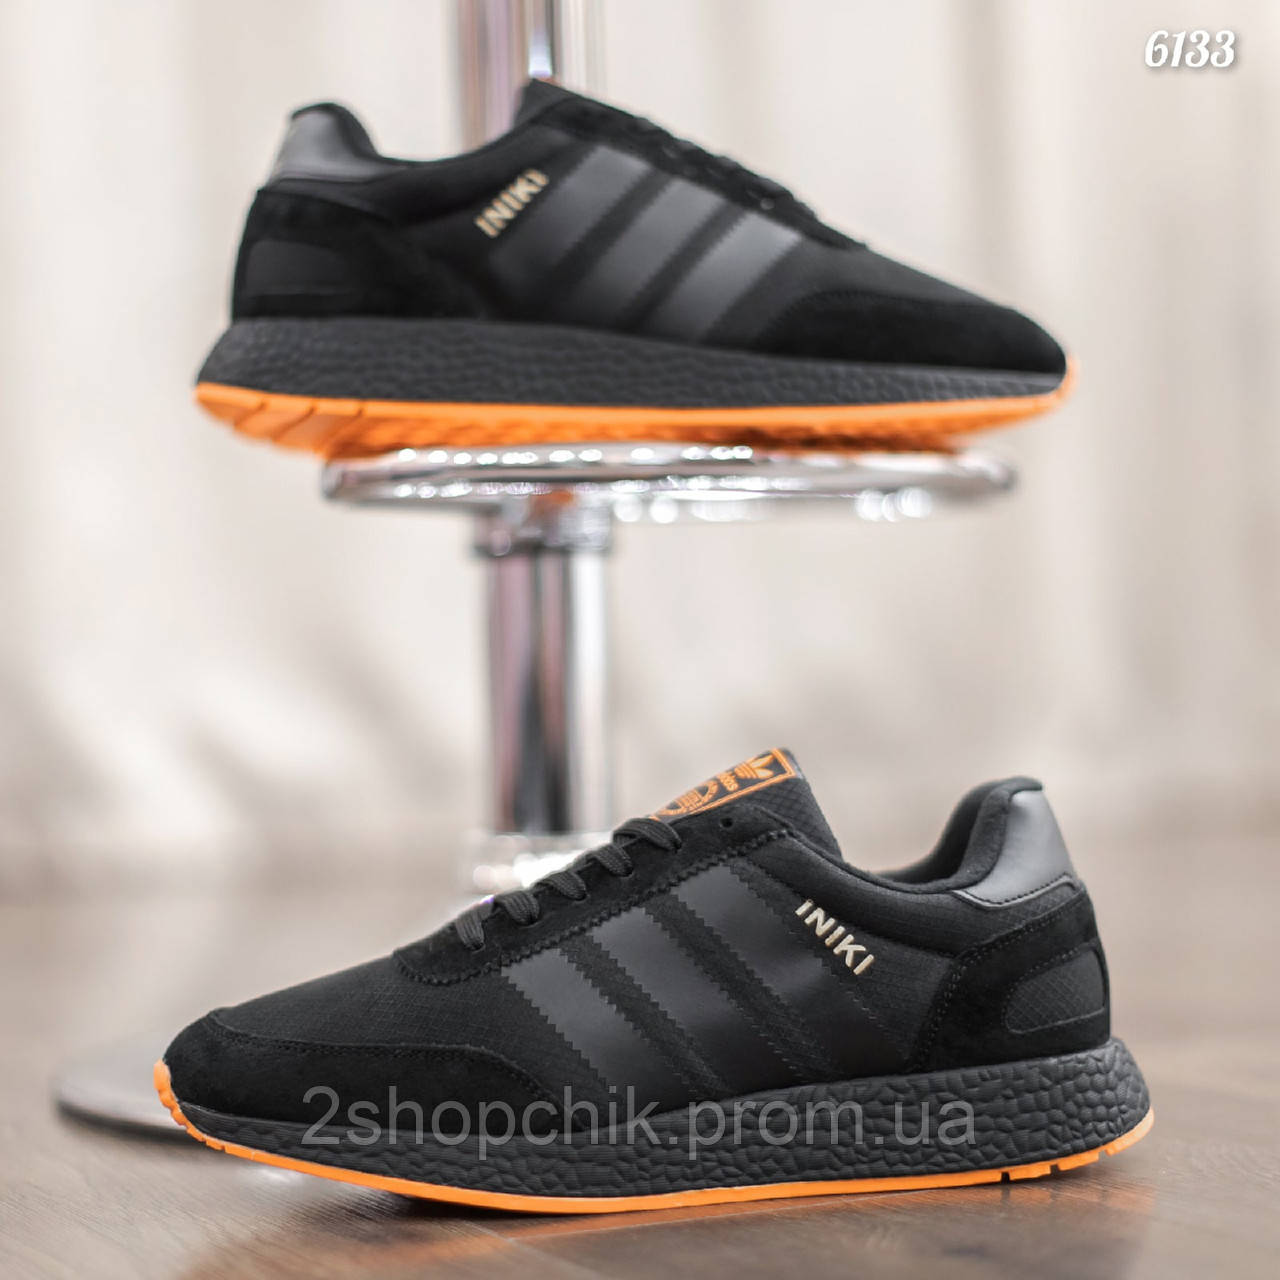 Adidas INIKI термо осенние зимние черные адидас кросовки цена 1430 грн — Prom.ua (ID#1502653970)